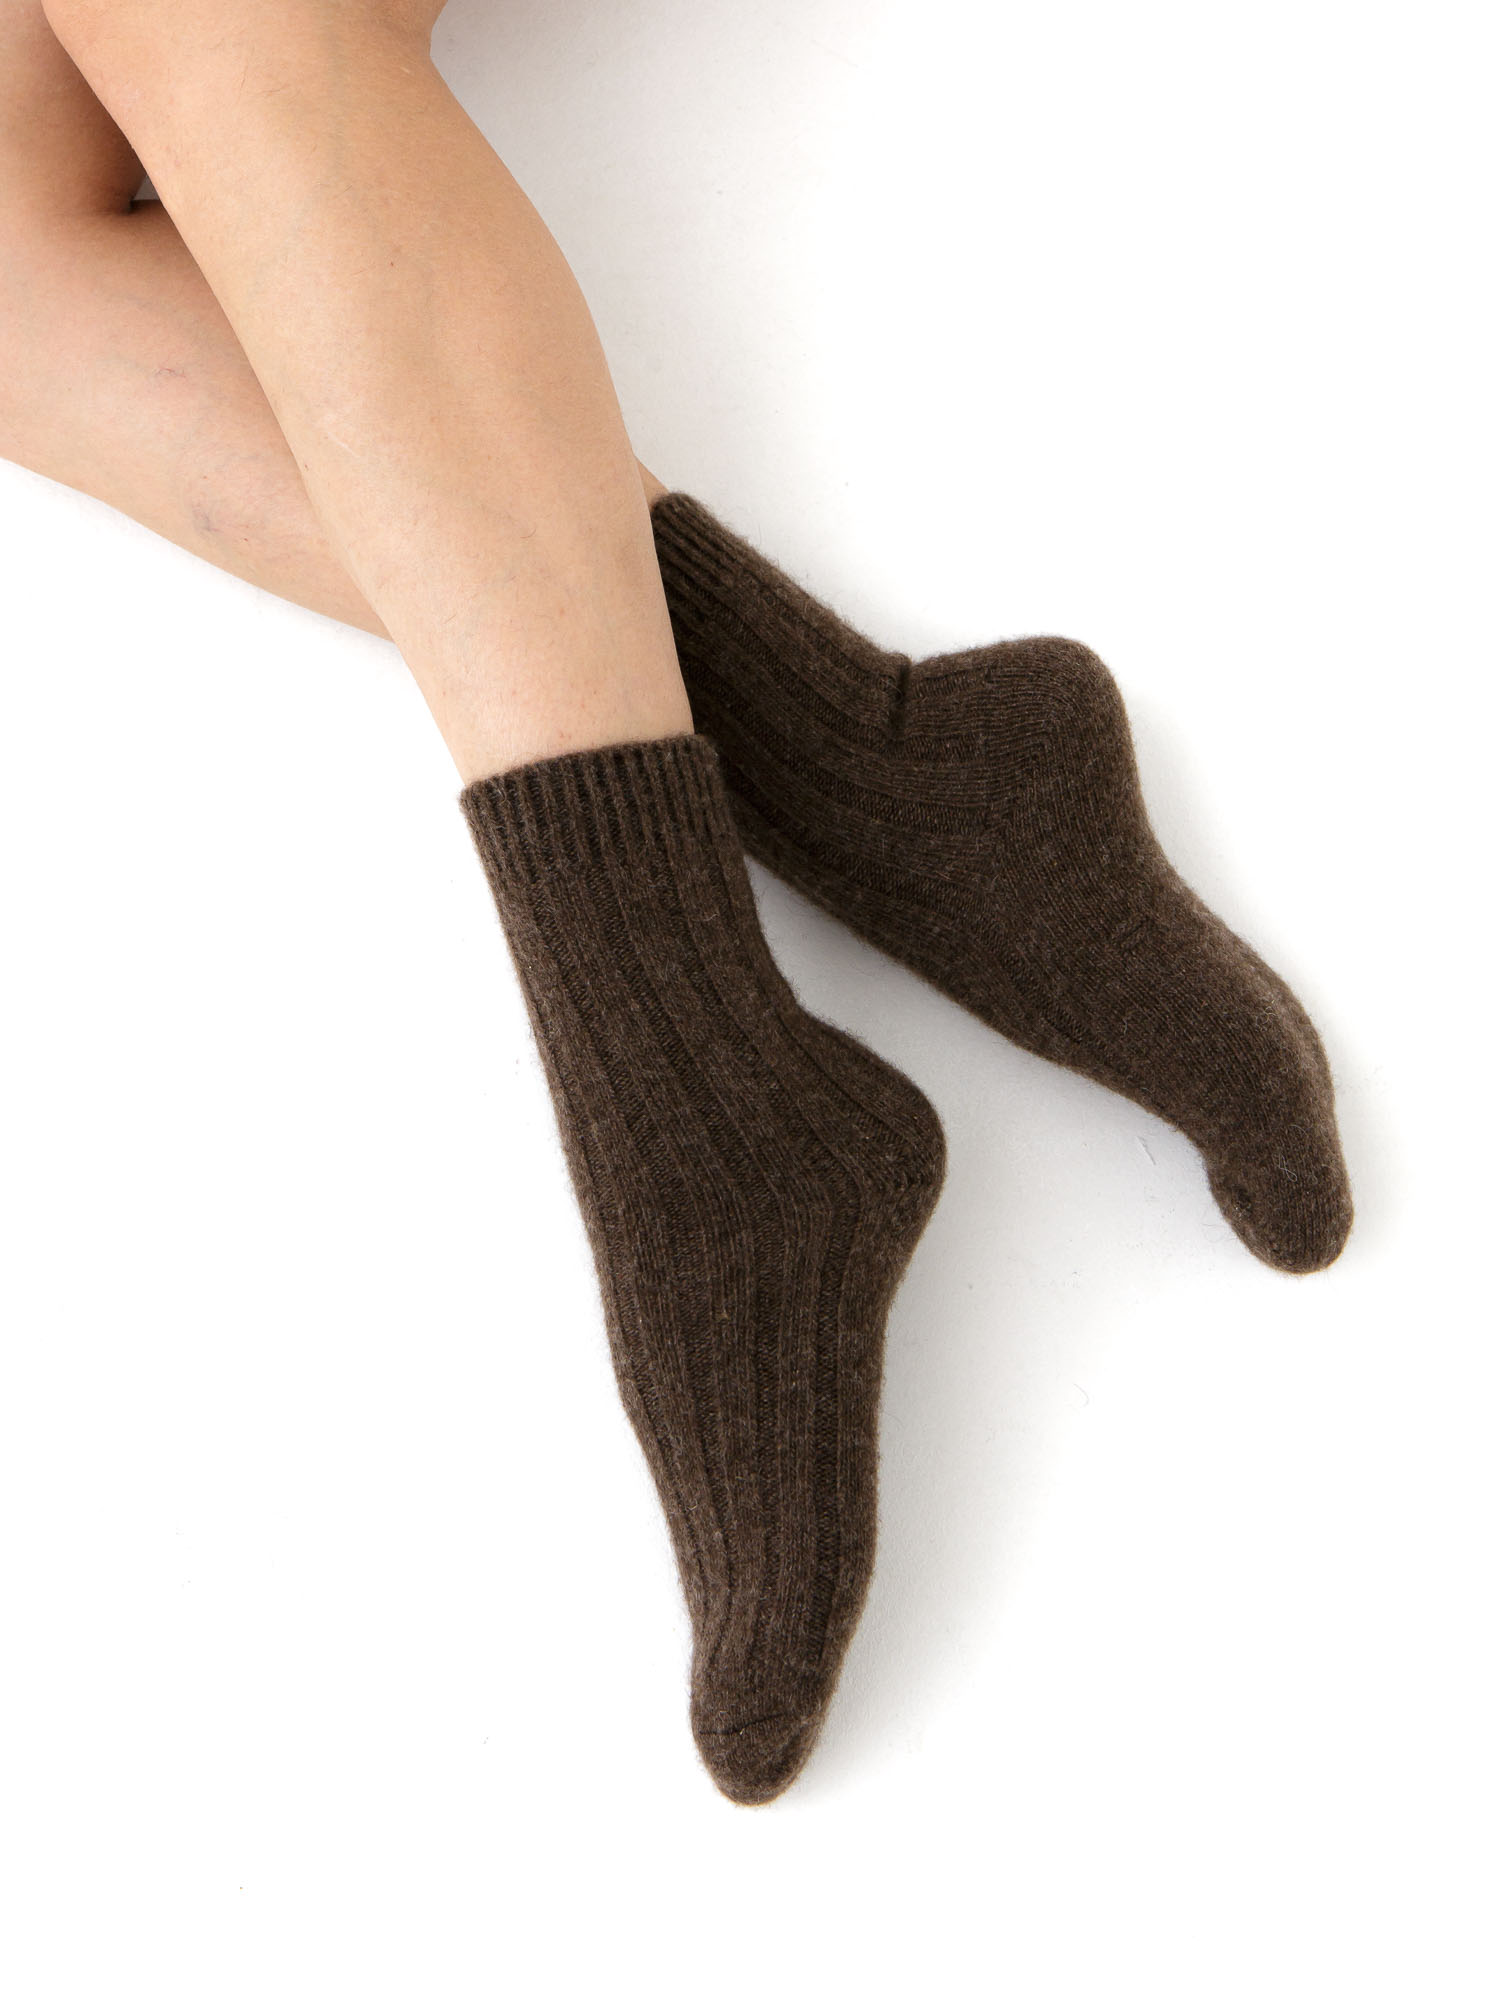 Носки и стельки Теплые носки из 100% шерсти темно-коричневые 34-36